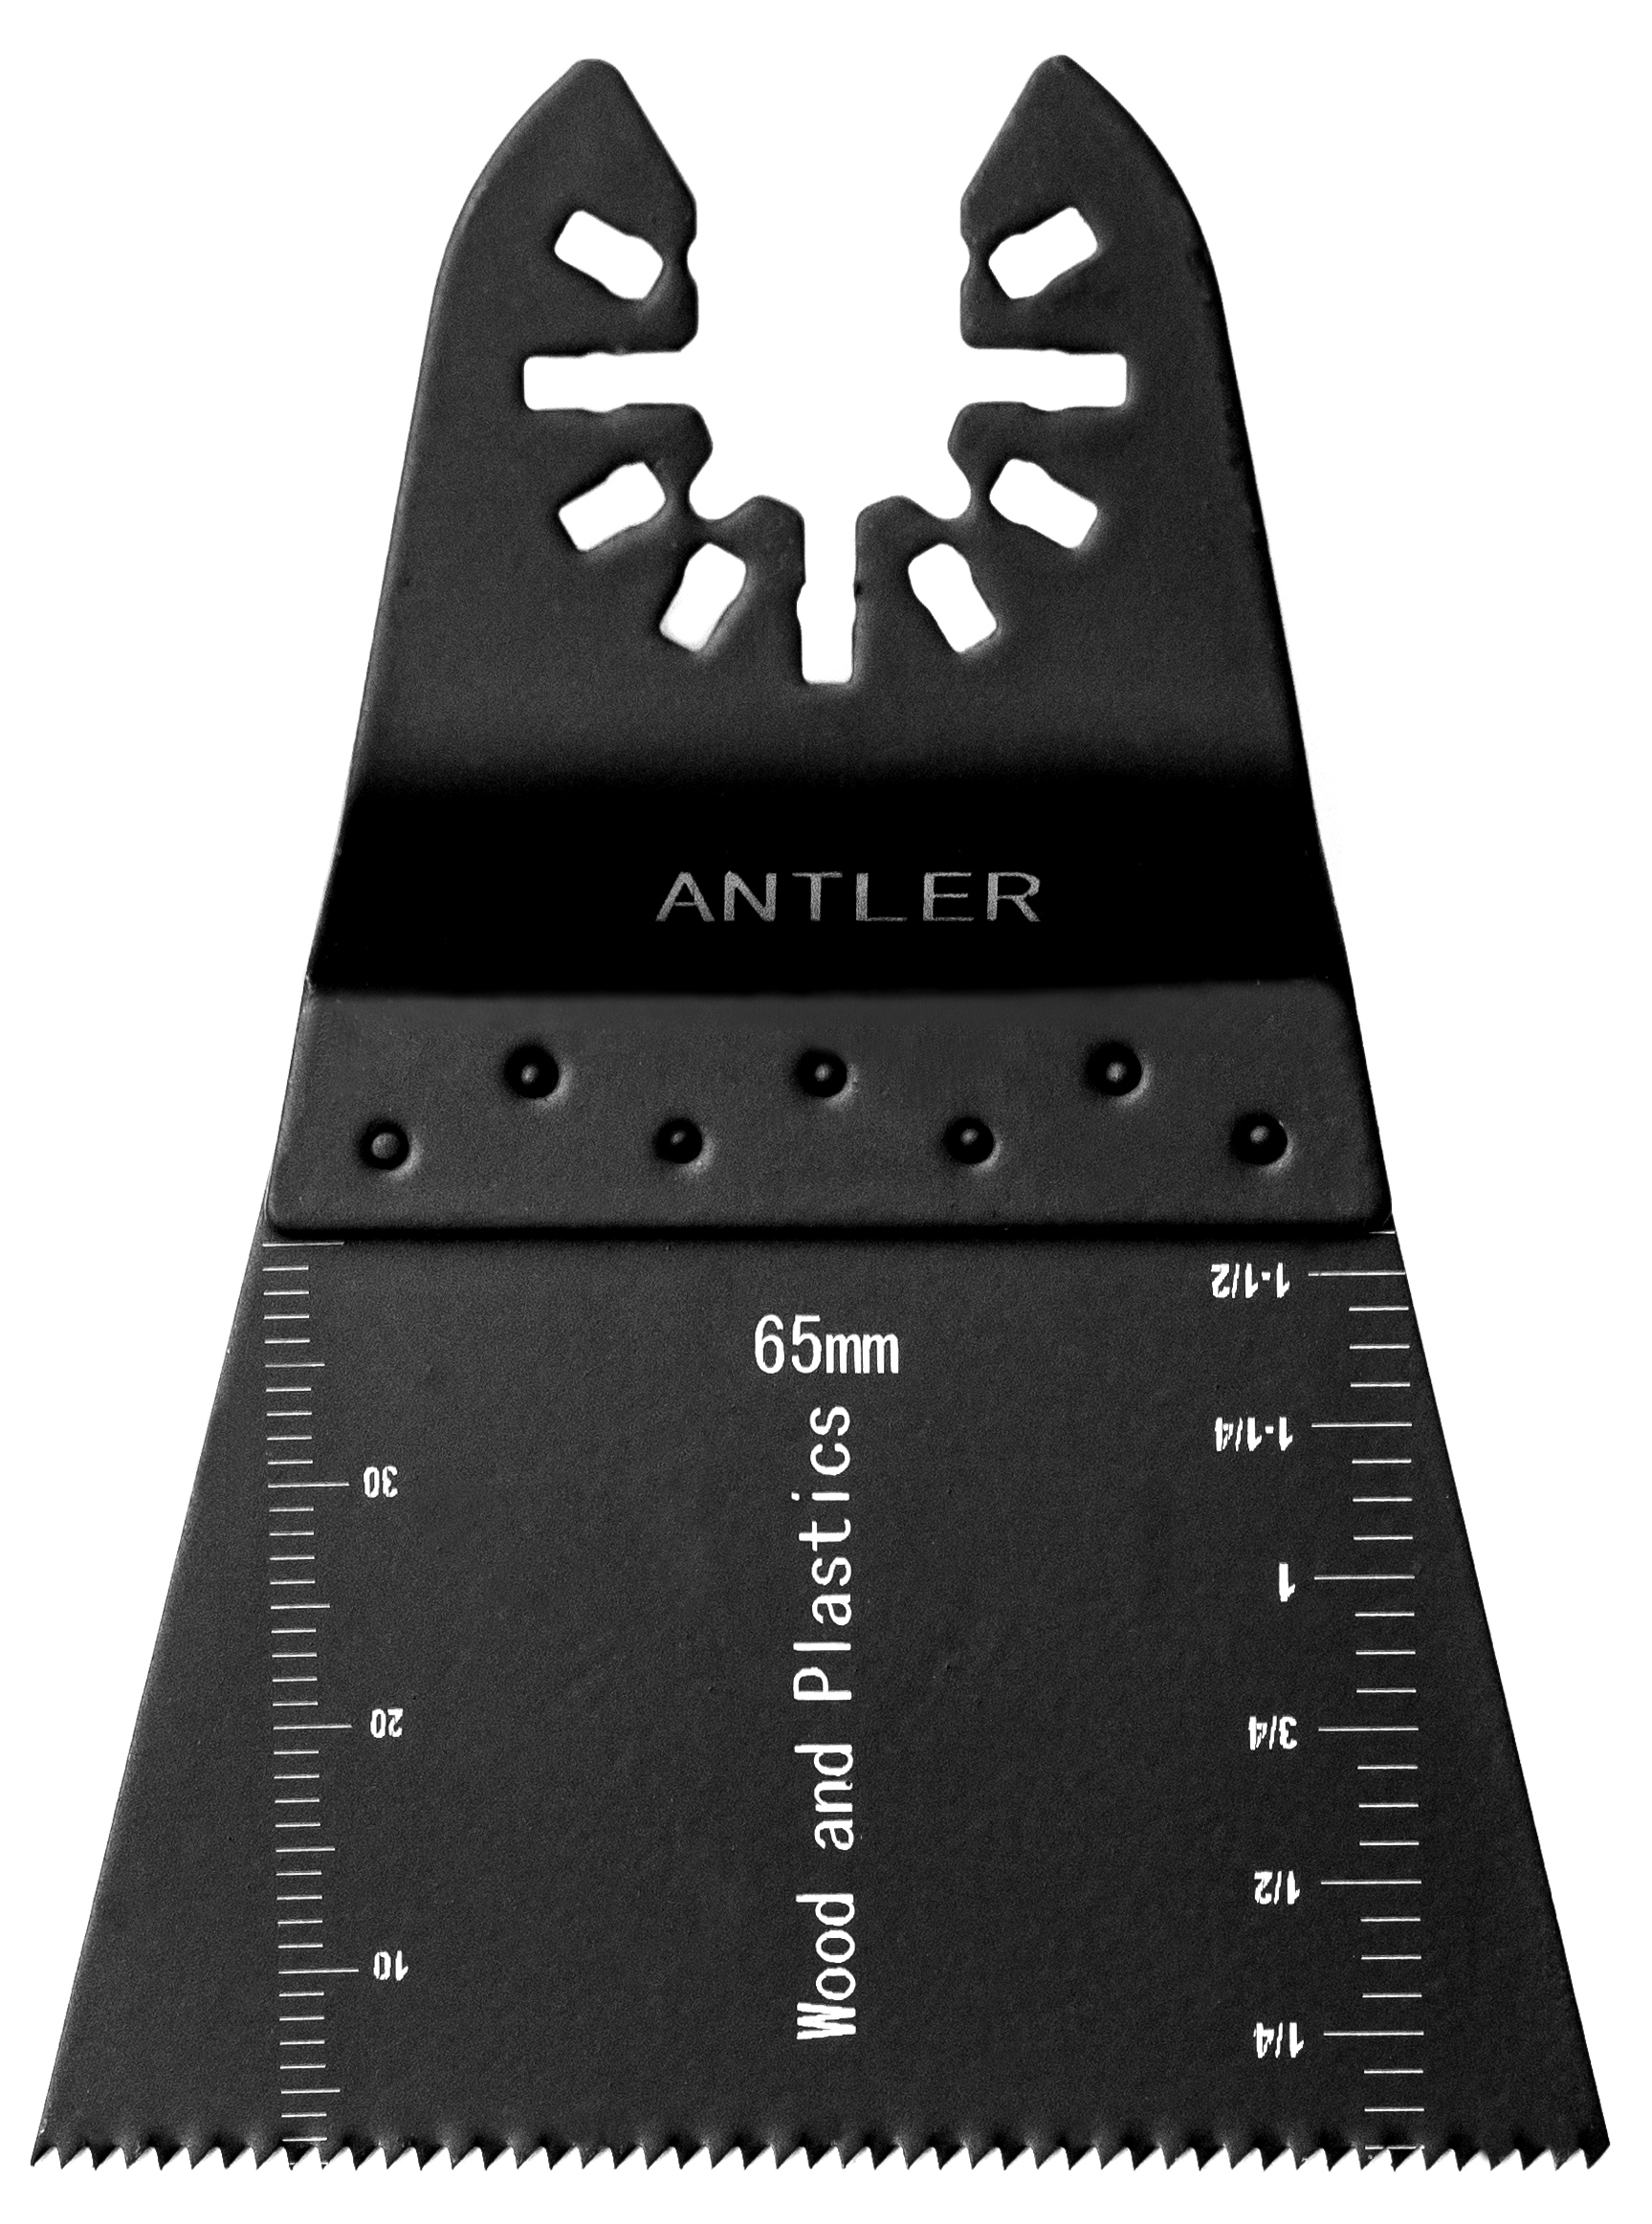 20 Antler Blade Combo a for Dewalt Stanley Worx F30 Oscillating Multitool for sale online 